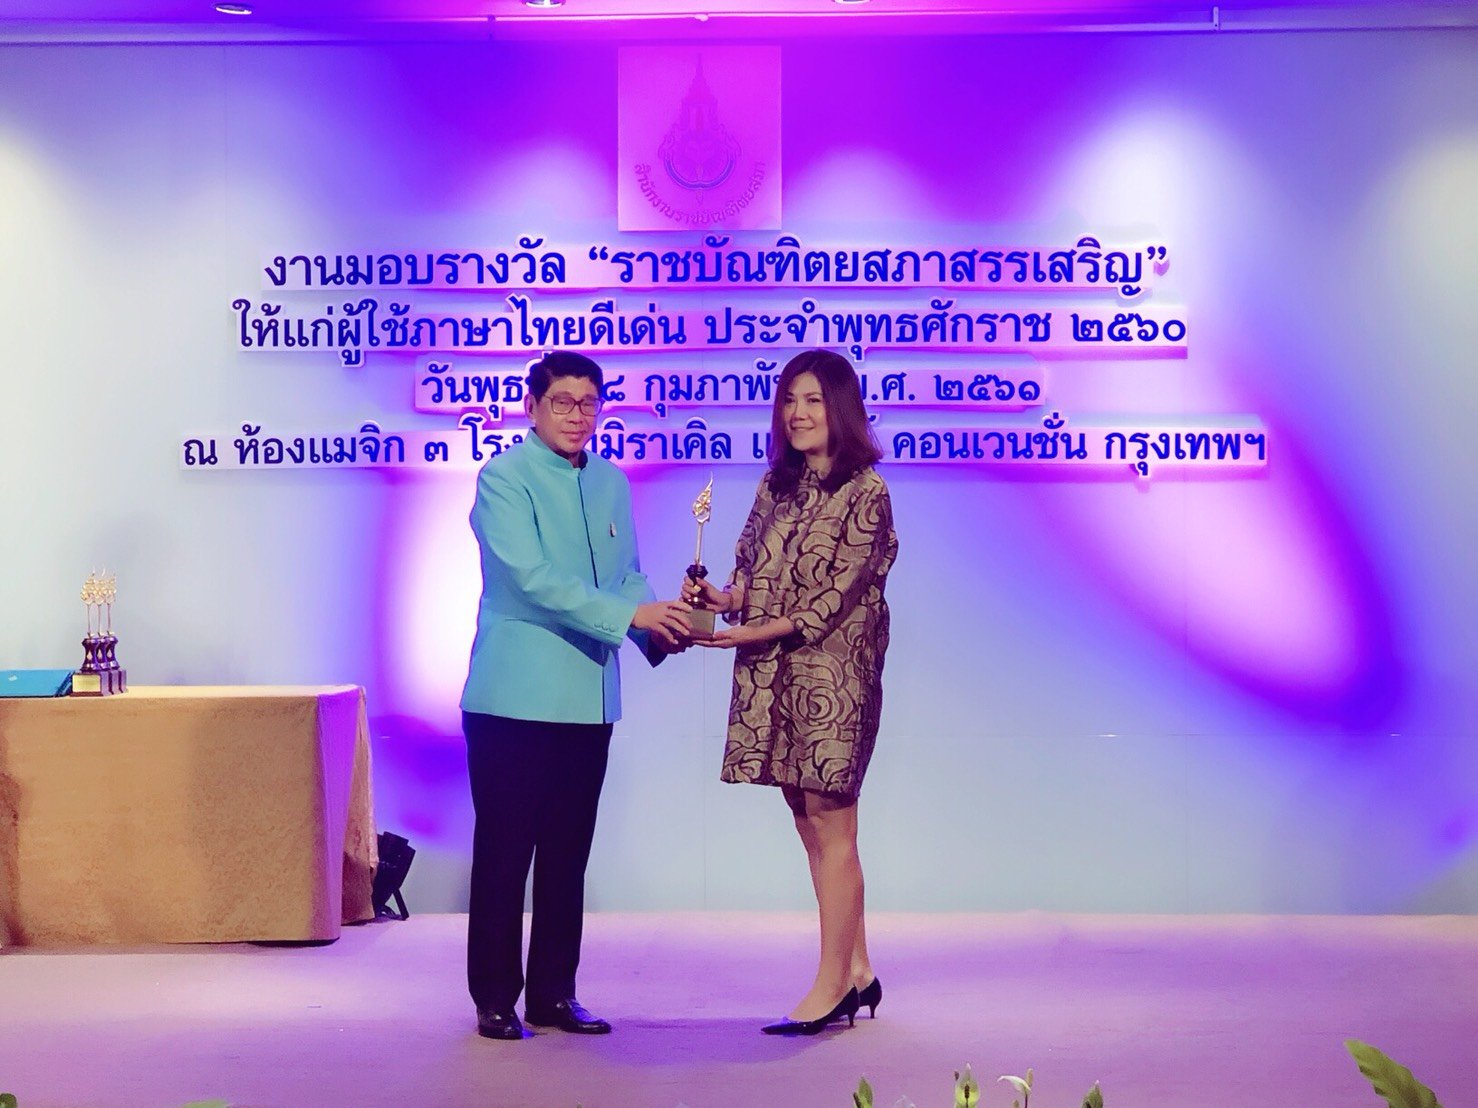 รางวัลราชบัณฑิตยสถานสรรเสริญ ประจำปี 2560 รางวัลผู้ส่งผลงานของผู้ดำเนินรายการชายเข้ารับการคัดเลือกรางวัลผู้ใช้ภาษาไทยดีเด่น